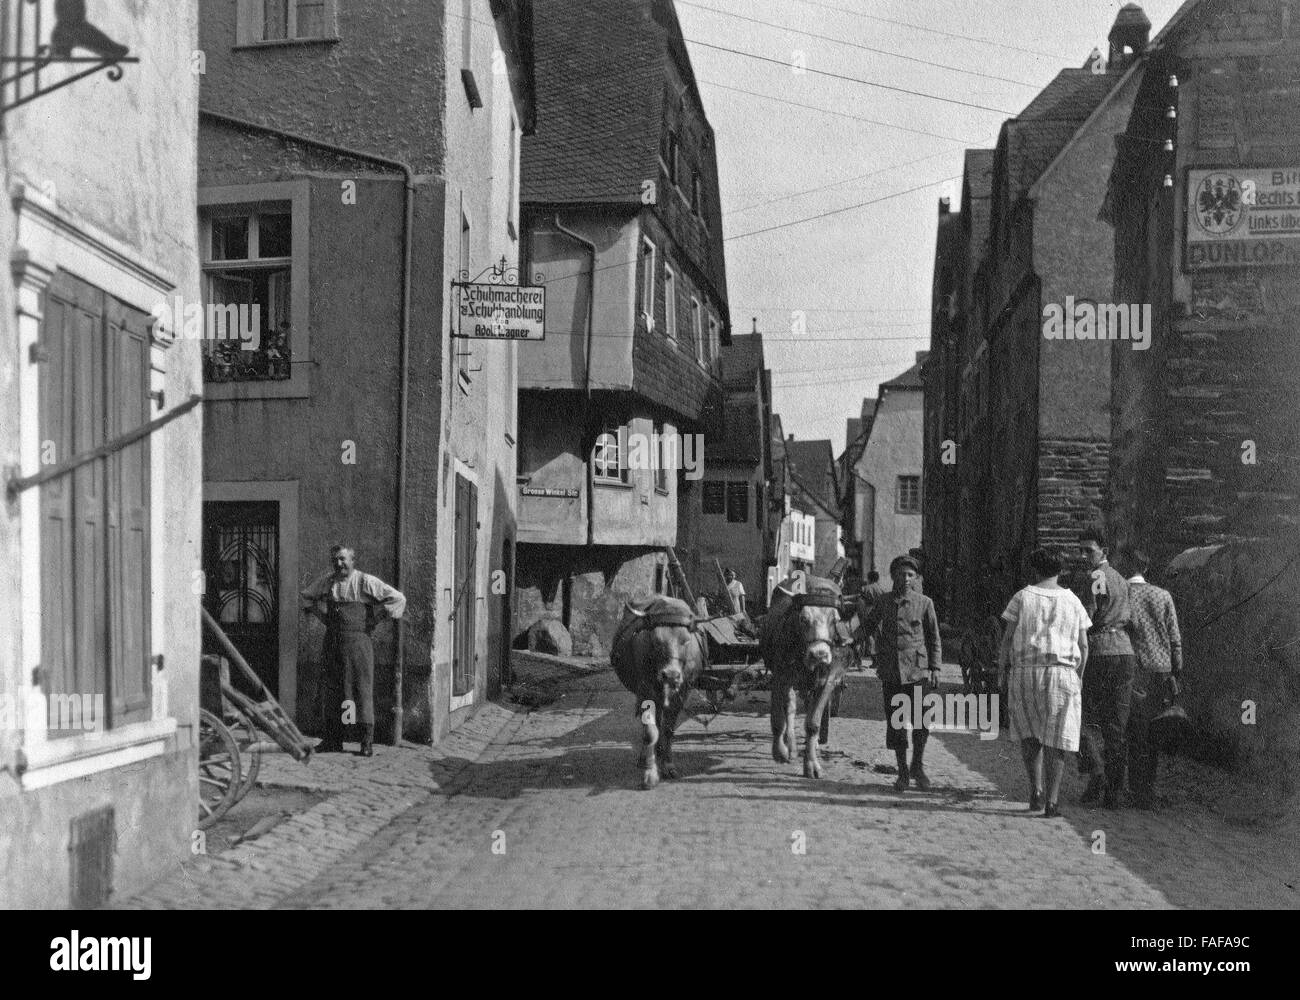 Blick in Die Geschäftige Winkelstraße in Enkirch an der Mosel, Deutschland, 1930er Jahre. Blick auf einer belebten Straße in Enkirch am Fluss Mosel, Deutschland der 1930er Jahre. Stockfoto